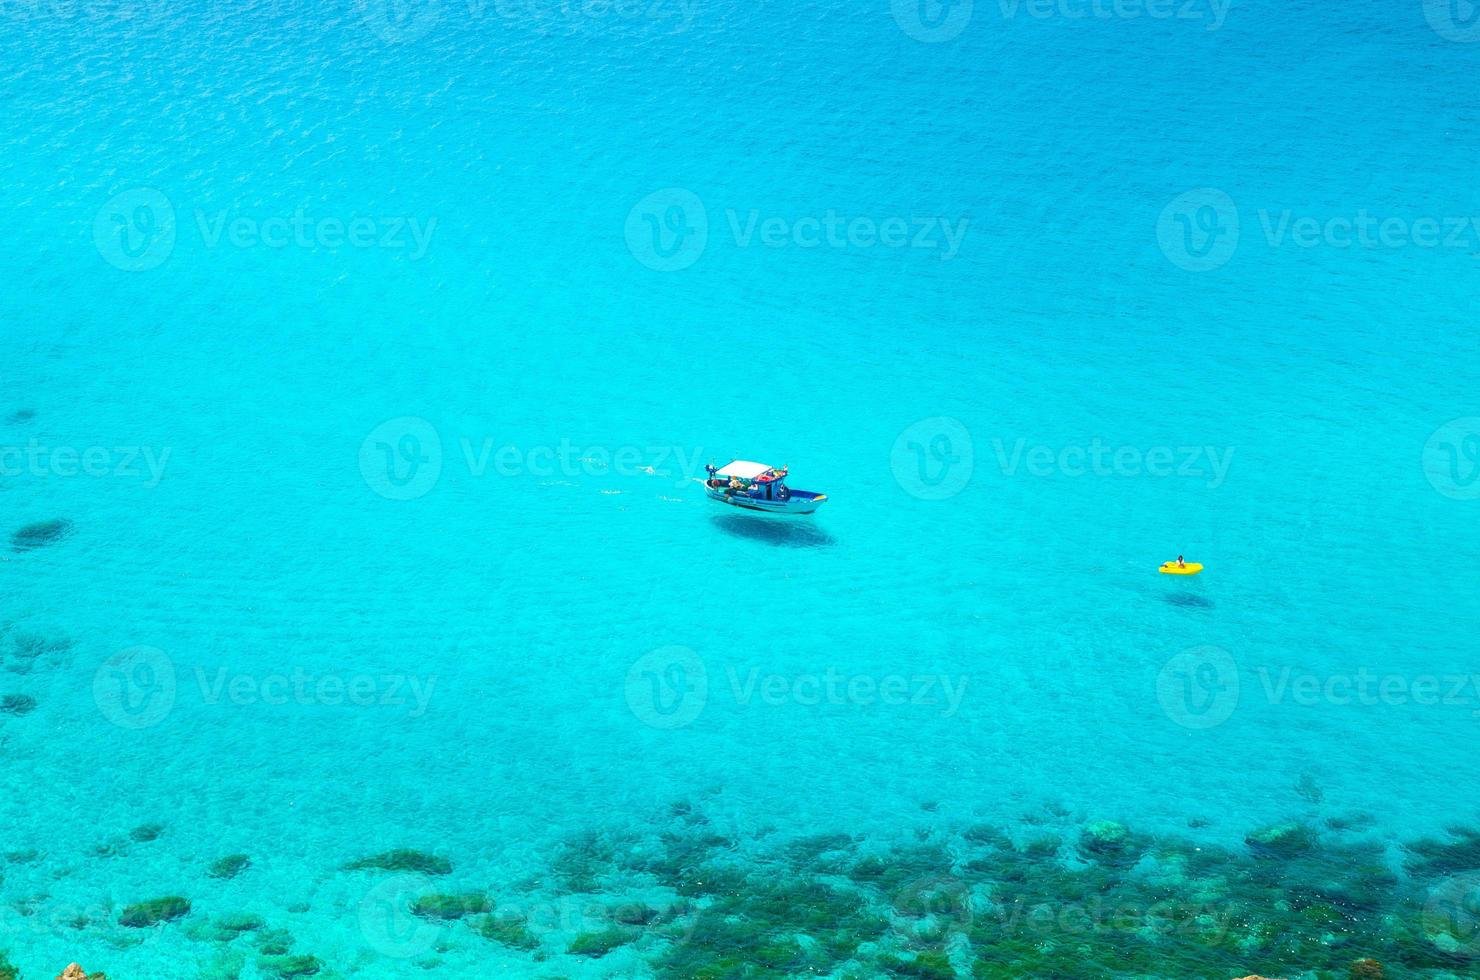 yate de pesca y bote de goma en la laguna de capo vaticano, calabria, italia foto